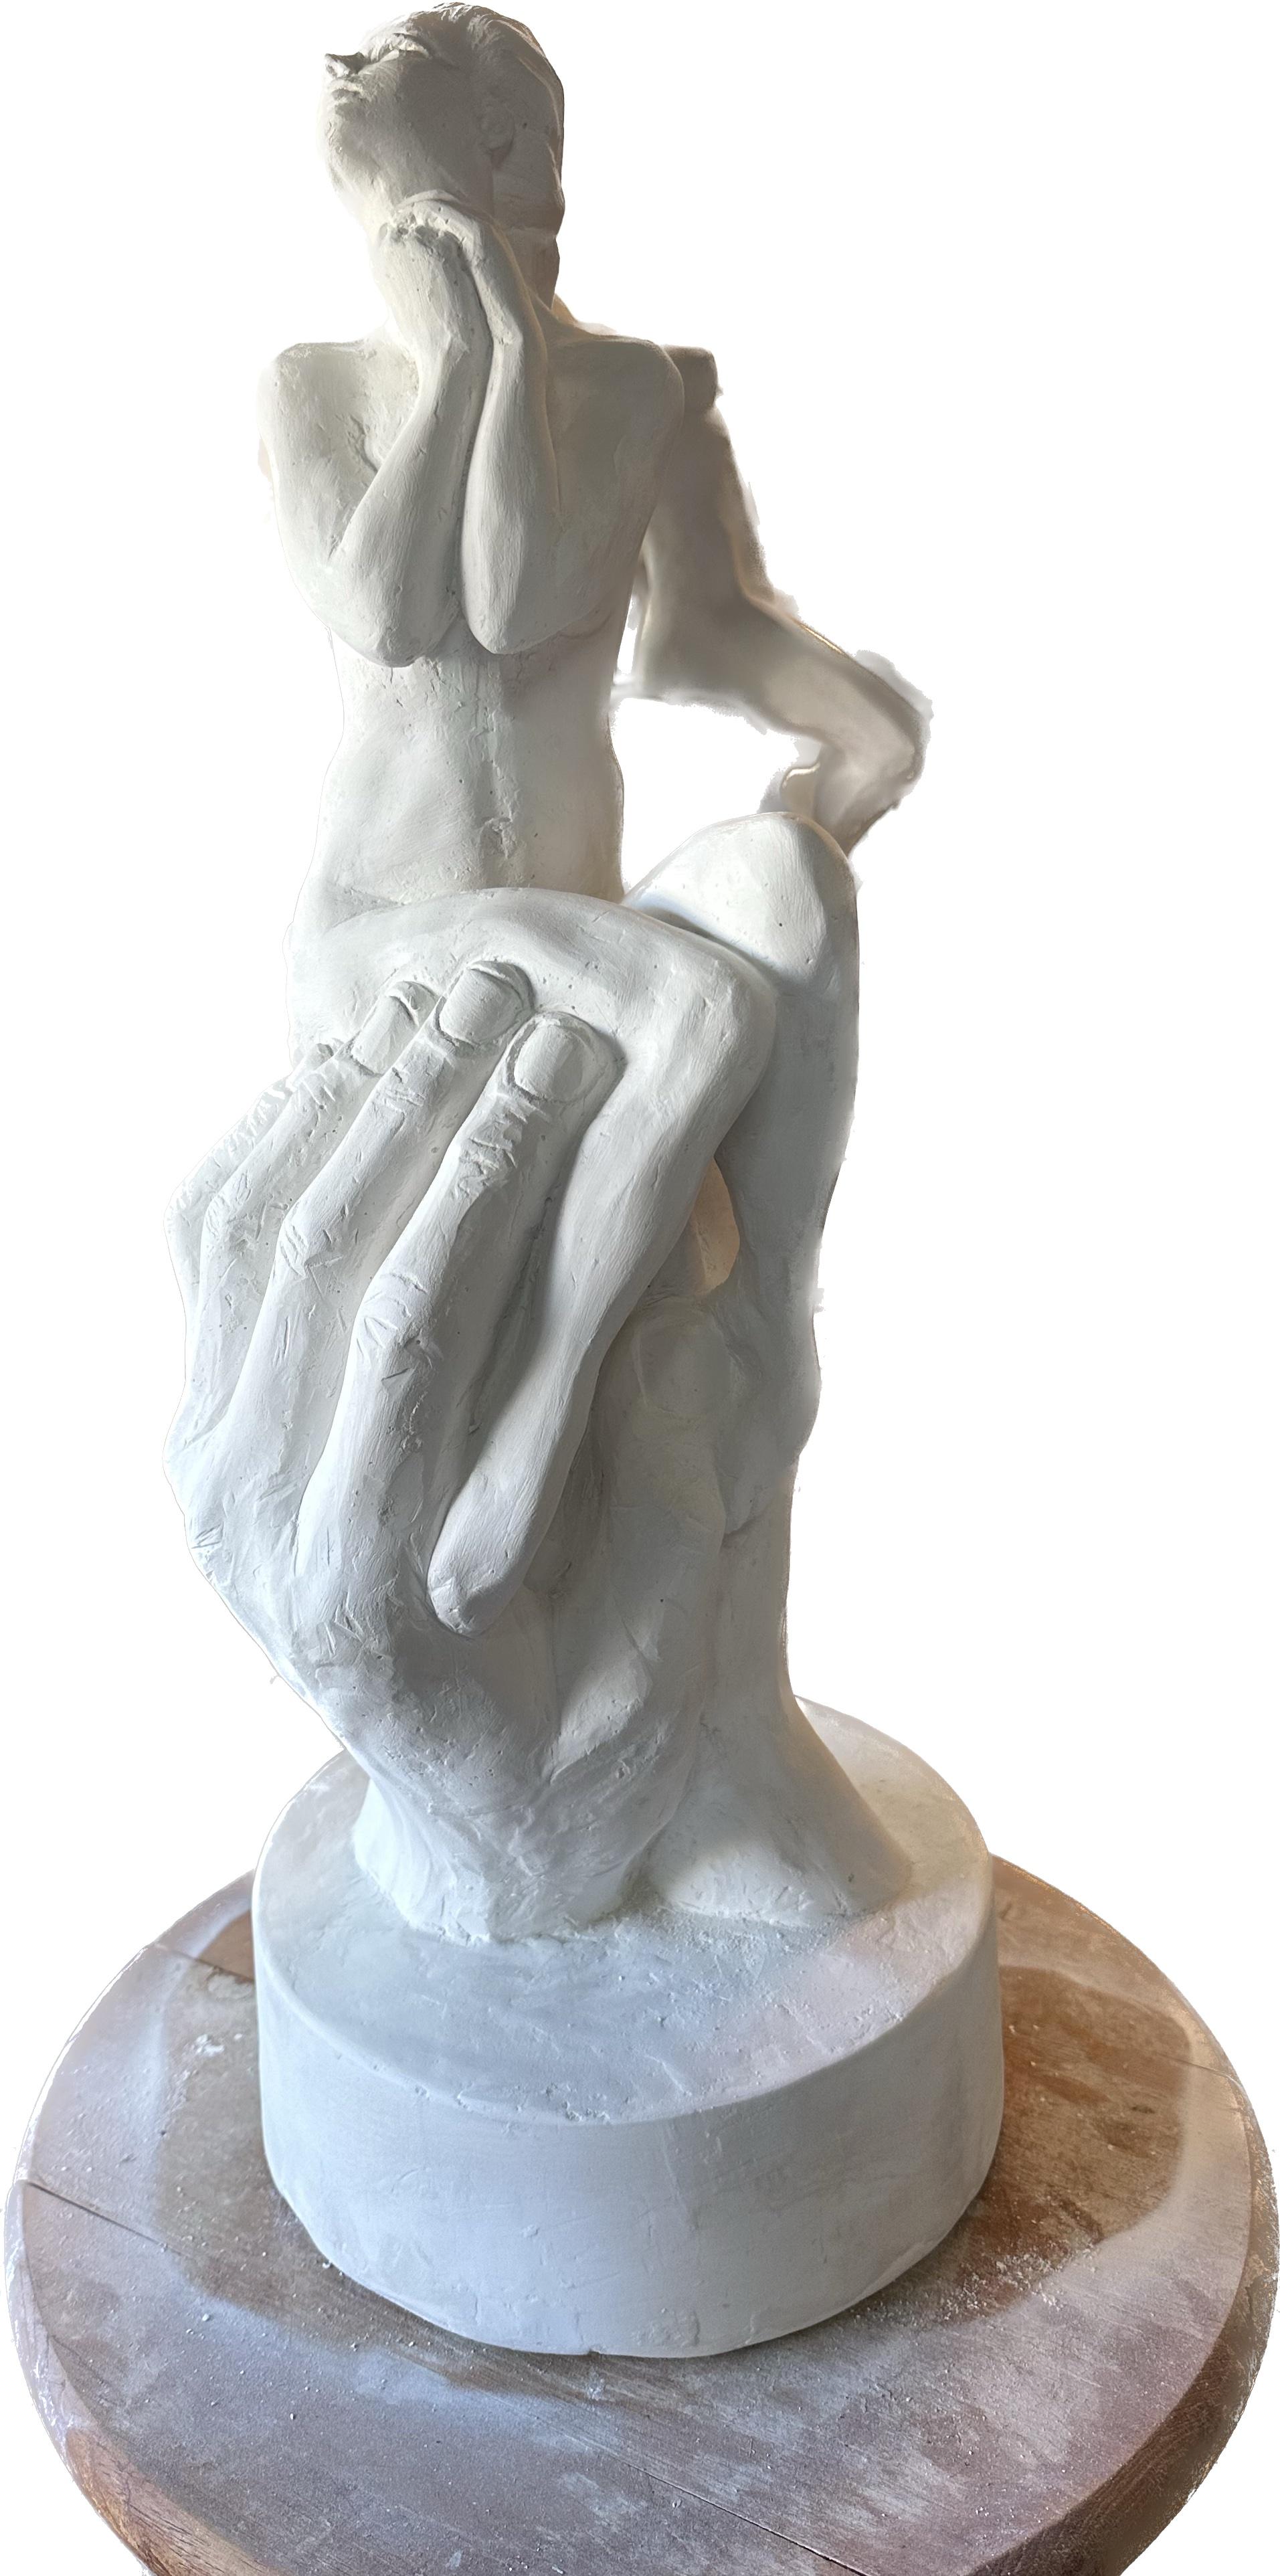 Karapet Balakeseryan  (Garo) Figurative Sculpture – Hope, Skulptur, Hydro-Stein, Staubmarmor, Handgefertigt von Garo, Einzigartig